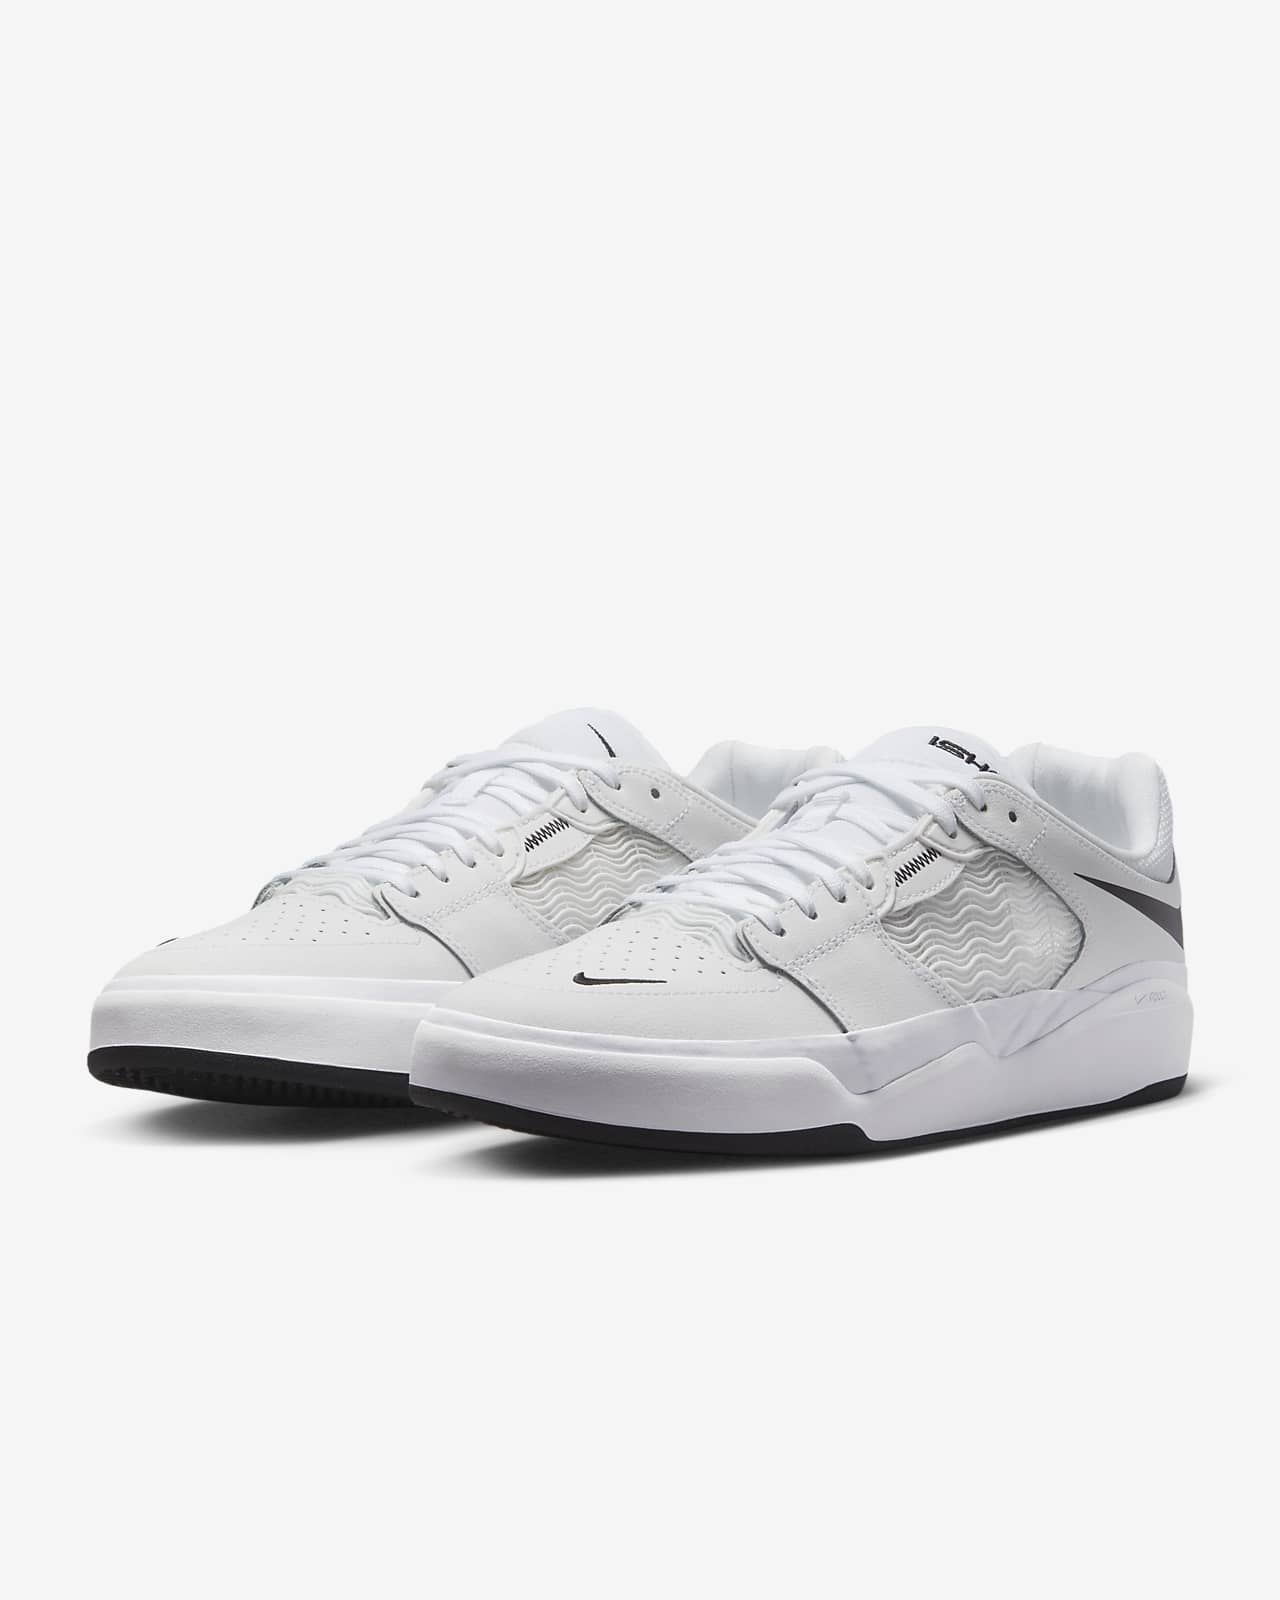 Nike SB Ishod Wair Premium Skate Shoes.